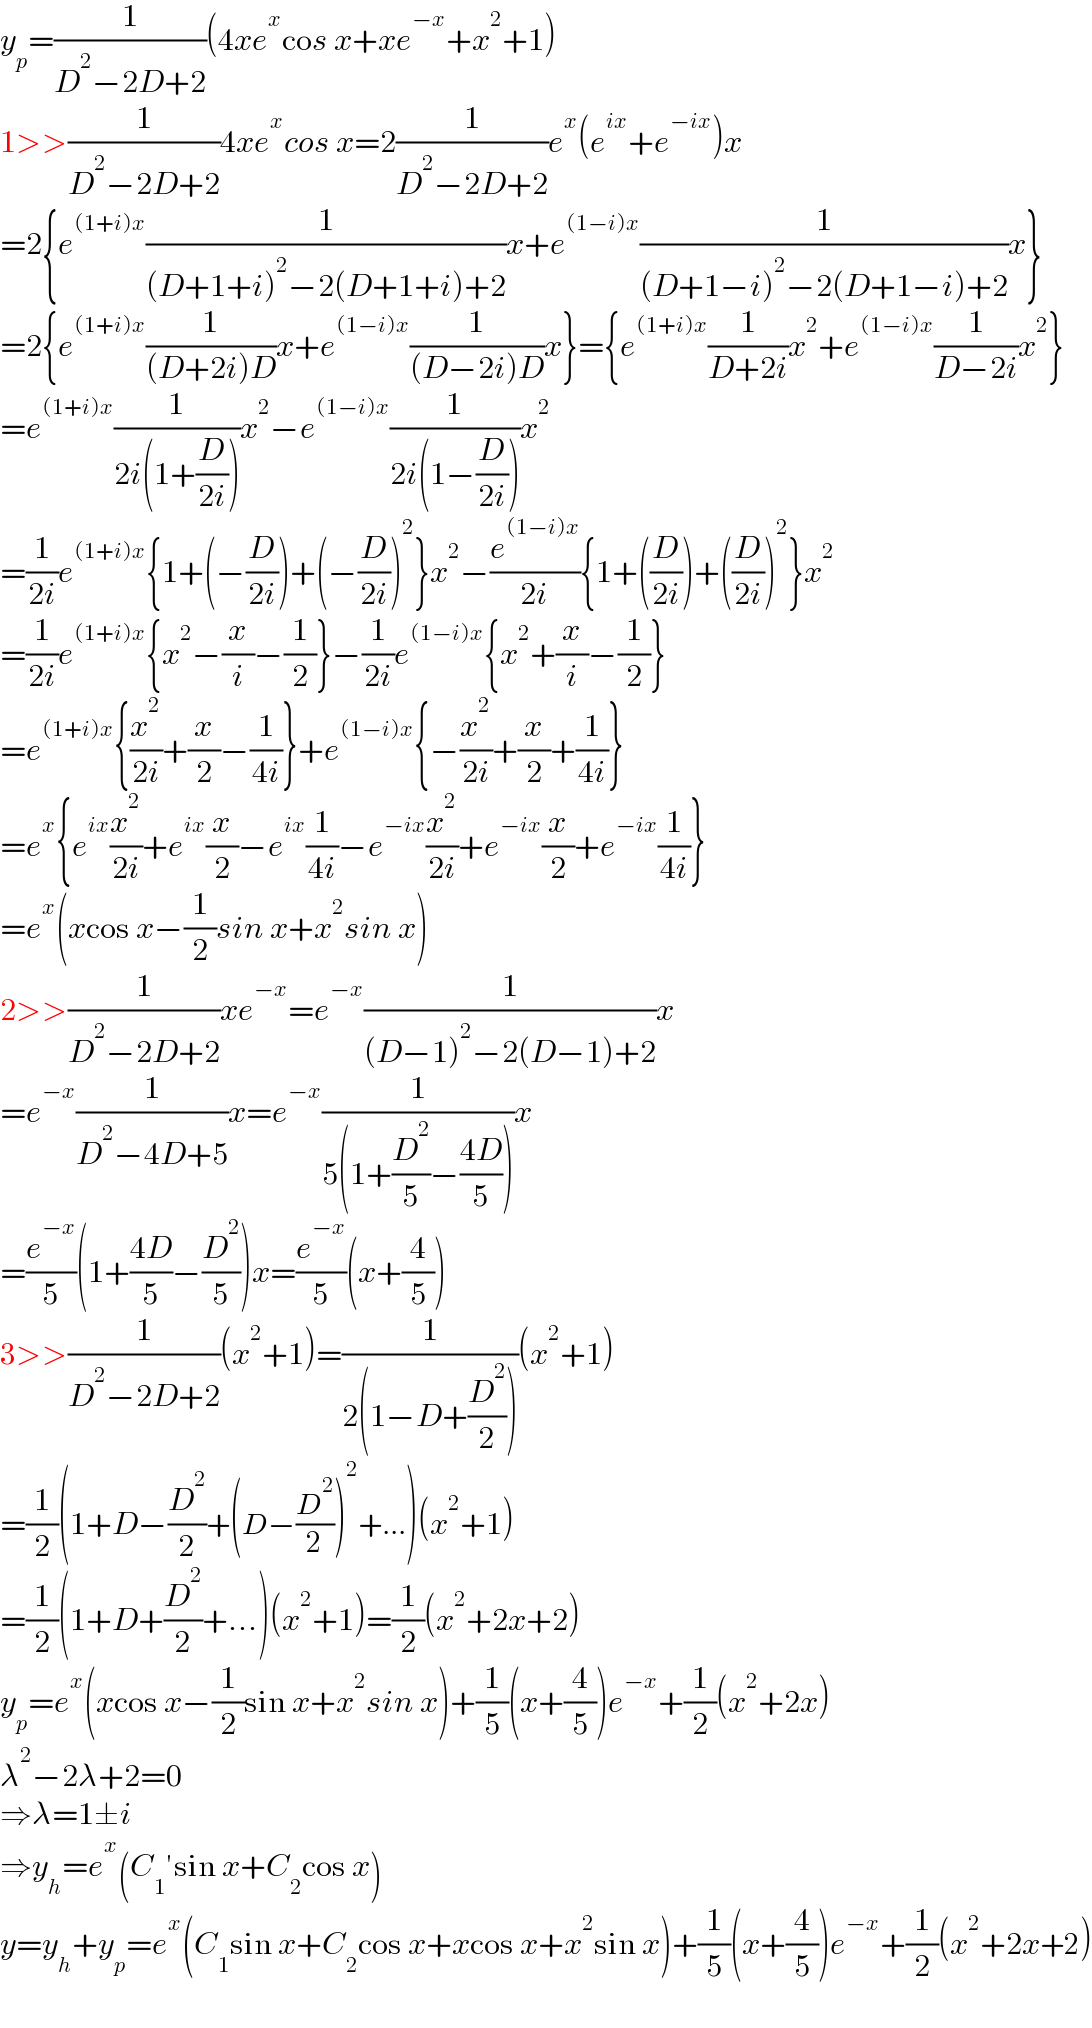 y_p =(1/(D^2 −2D+2))(4xe^x cos x+xe^(−x) +x^2 +1)  1>>(1/(D^2 −2D+2))4xe^x cos x=2(1/(D^2 −2D+2))e^x (e^(ix) +e^(−ix) )x  =2{e^((1+i)x) (1/((D+1+i)^2 −2(D+1+i)+2))x+e^((1−i)x) (1/((D+1−i)^2 −2(D+1−i)+2))x}  =2{e^((1+i)x) (1/((D+2i)D))x+e^((1−i)x) (1/((D−2i)D))x}={e^((1+i)x) (1/(D+2i))x^2 +e^((1−i)x) (1/(D−2i))x^2 }  =e^((1+i)x) (1/(2i(1+(D/(2i)))))x^2 −e^((1−i)x) (1/(2i(1−(D/(2i)))))x^2   =(1/(2i))e^((1+i)x) {1+(−(D/(2i)))+(−(D/(2i)))^2 }x^2 −(e^((1−i)x) /(2i)){1+((D/(2i)))+((D/(2i)))^2 }x^2   =(1/(2i))e^((1+i)x) {x^2 −(x/i)−(1/2)}−(1/(2i))e^((1−i)x) {x^2 +(x/i)−(1/2)}  =e^((1+i)x) {(x^2 /(2i))+(x/2)−(1/(4i))}+e^((1−i)x) {−(x^2 /(2i))+(x/2)+(1/(4i))}  =e^x {e^(ix) (x^2 /(2i))+e^(ix) (x/2)−e^(ix) (1/(4i))−e^(−ix) (x^2 /(2i))+e^(−ix) (x/2)+e^(−ix) (1/(4i))}  =e^x (xcos x−(1/2)sin x+x^2 sin x)  2>>(1/(D^2 −2D+2))xe^(−x) =e^(−x) (1/((D−1)^2 −2(D−1)+2))x  =e^(−x) (1/(D^2 −4D+5))x=e^(−x) (1/(5(1+(D^2 /5)−((4D)/5))))x  =(e^(−x) /5)(1+((4D)/5)−(D^2 /5))x=(e^(−x) /5)(x+(4/5))  3>>(1/(D^2 −2D+2))(x^2 +1)=(1/(2(1−D+(D^2 /2))))(x^2 +1)  =(1/2)(1+D−(D^2 /2)+(D−(D^2 /2))^2 +...)(x^2 +1)  =(1/2)(1+D+(D^2 /2)+...)(x^2 +1)=(1/2)(x^2 +2x+2)  y_p =e^x (xcos x−(1/2)sin x+x^2 sin x)+(1/5)(x+(4/5))e^(−x) +(1/2)(x^2 +2x)  λ^2 −2λ+2=0  ⇒λ=1±i  ⇒y_h =e^x (C_1 ′sin x+C_2 cos x)  y=y_h +y_p =e^x (C_1 sin x+C_2 cos x+xcos x+x^2 sin x)+(1/5)(x+(4/5))e^(−x) +(1/2)(x^2 +2x+2)  